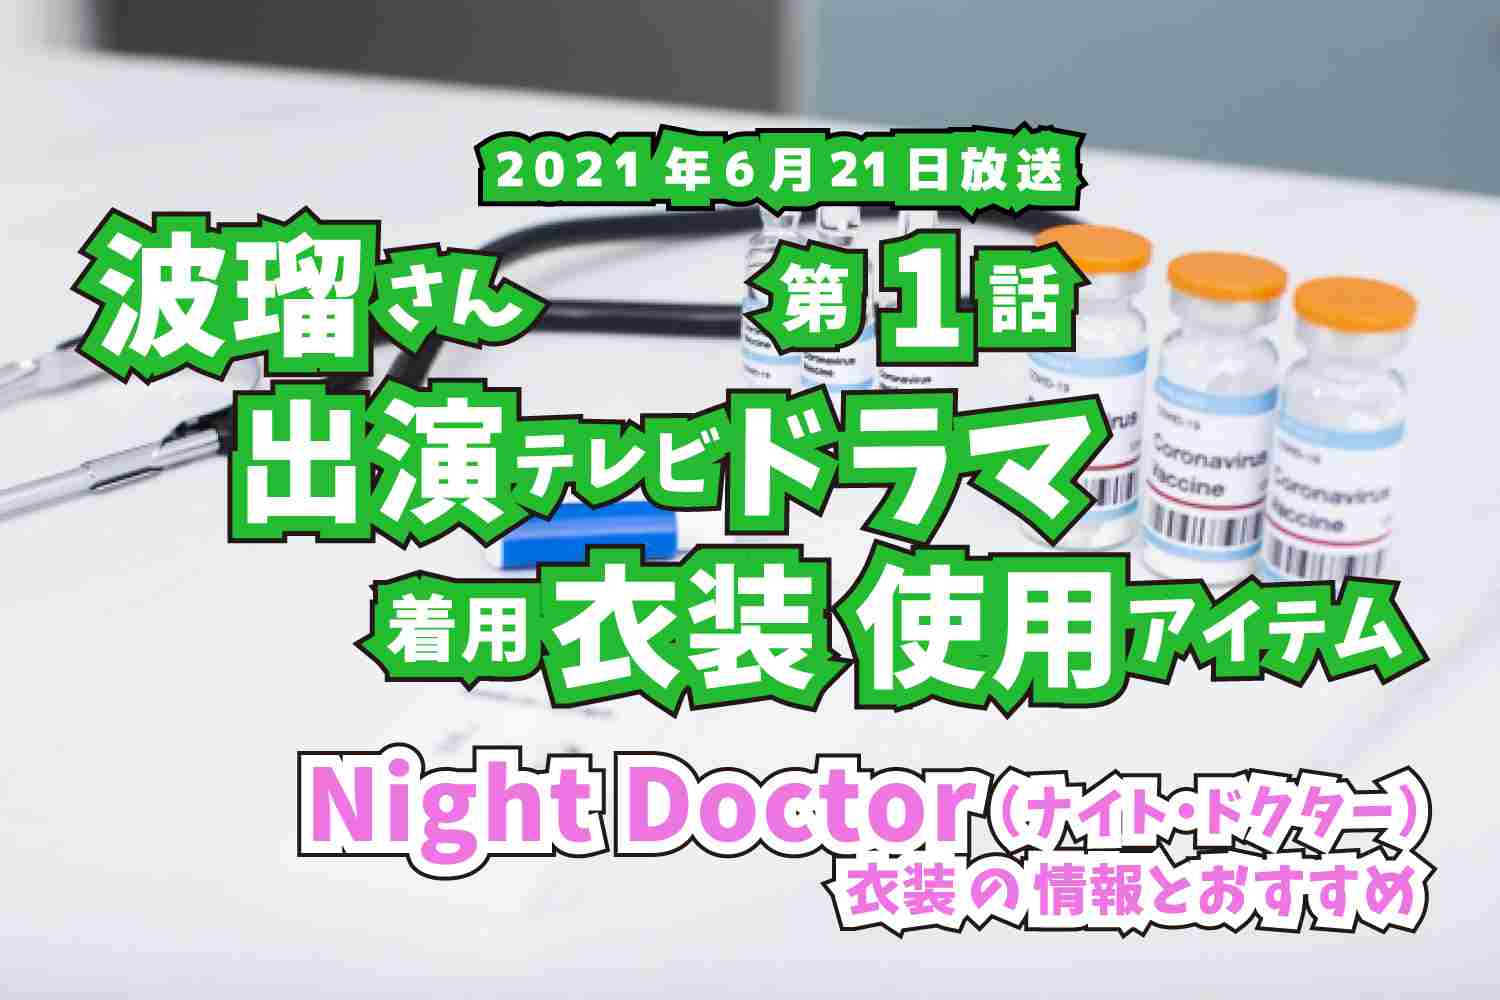 Night Doctor　波瑠さん　ドラマ　衣装　2021年6月21日放送